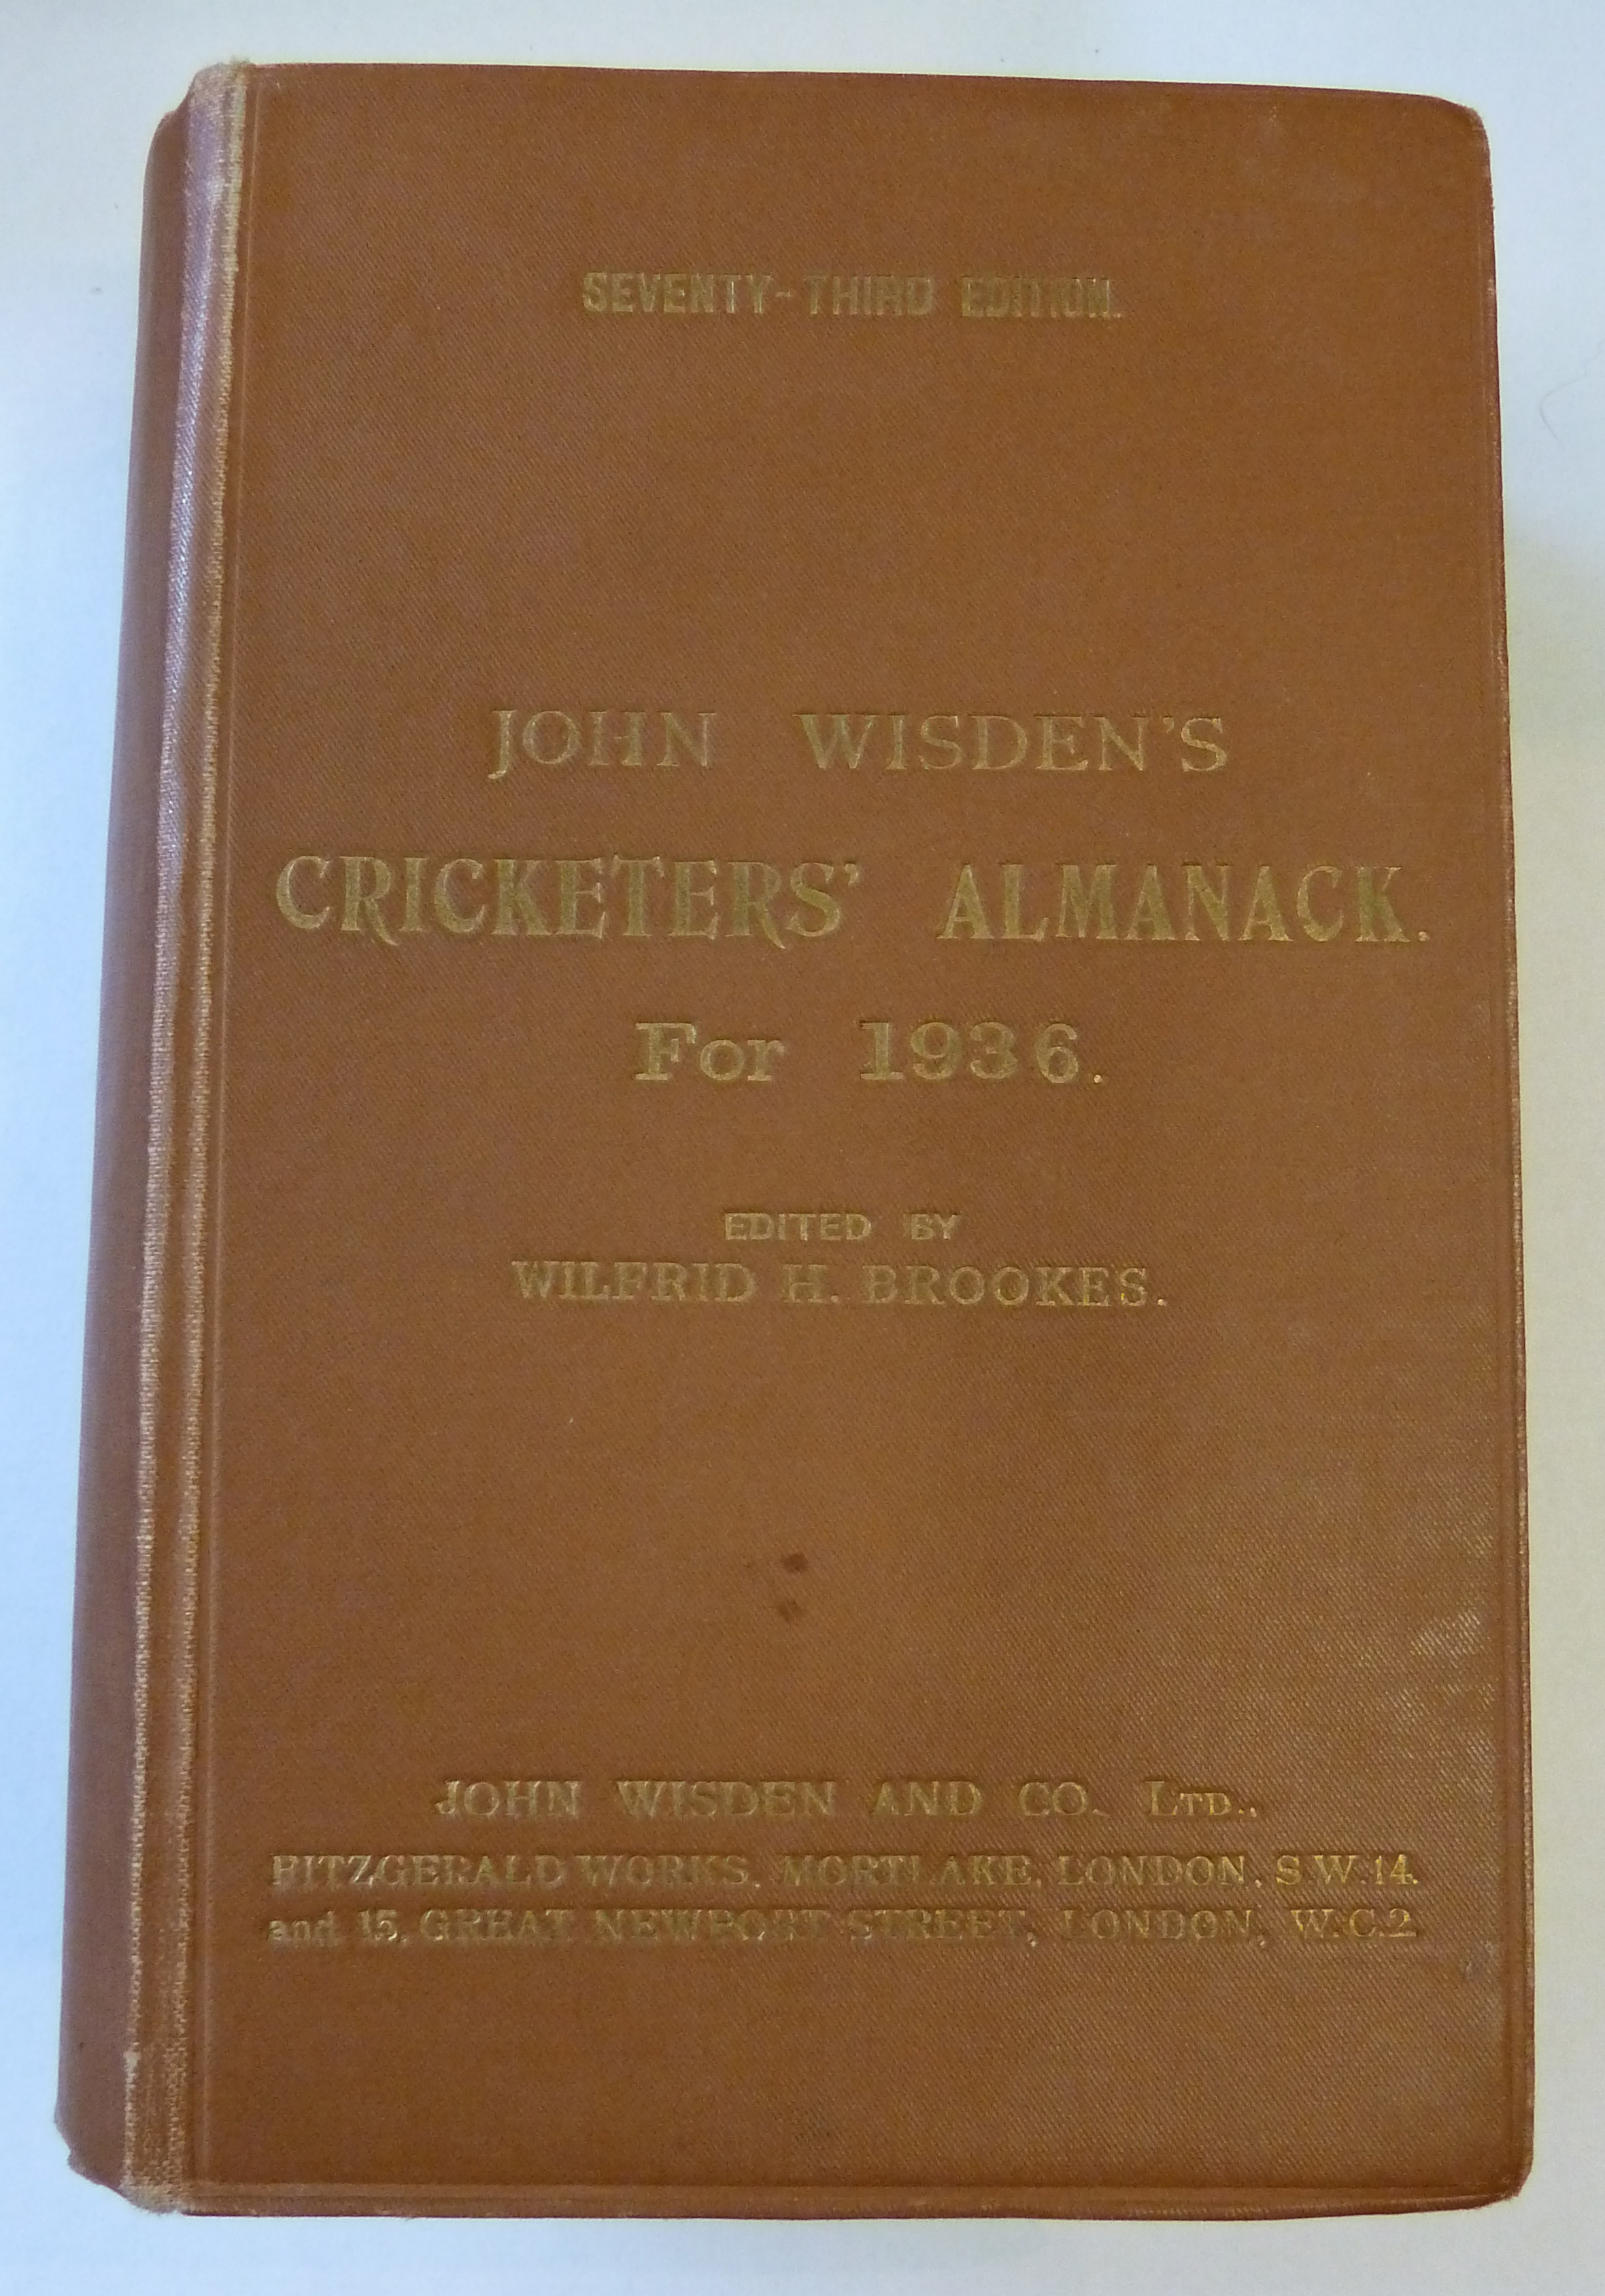 John Wisden's Cricketers' Almanack for 1936 